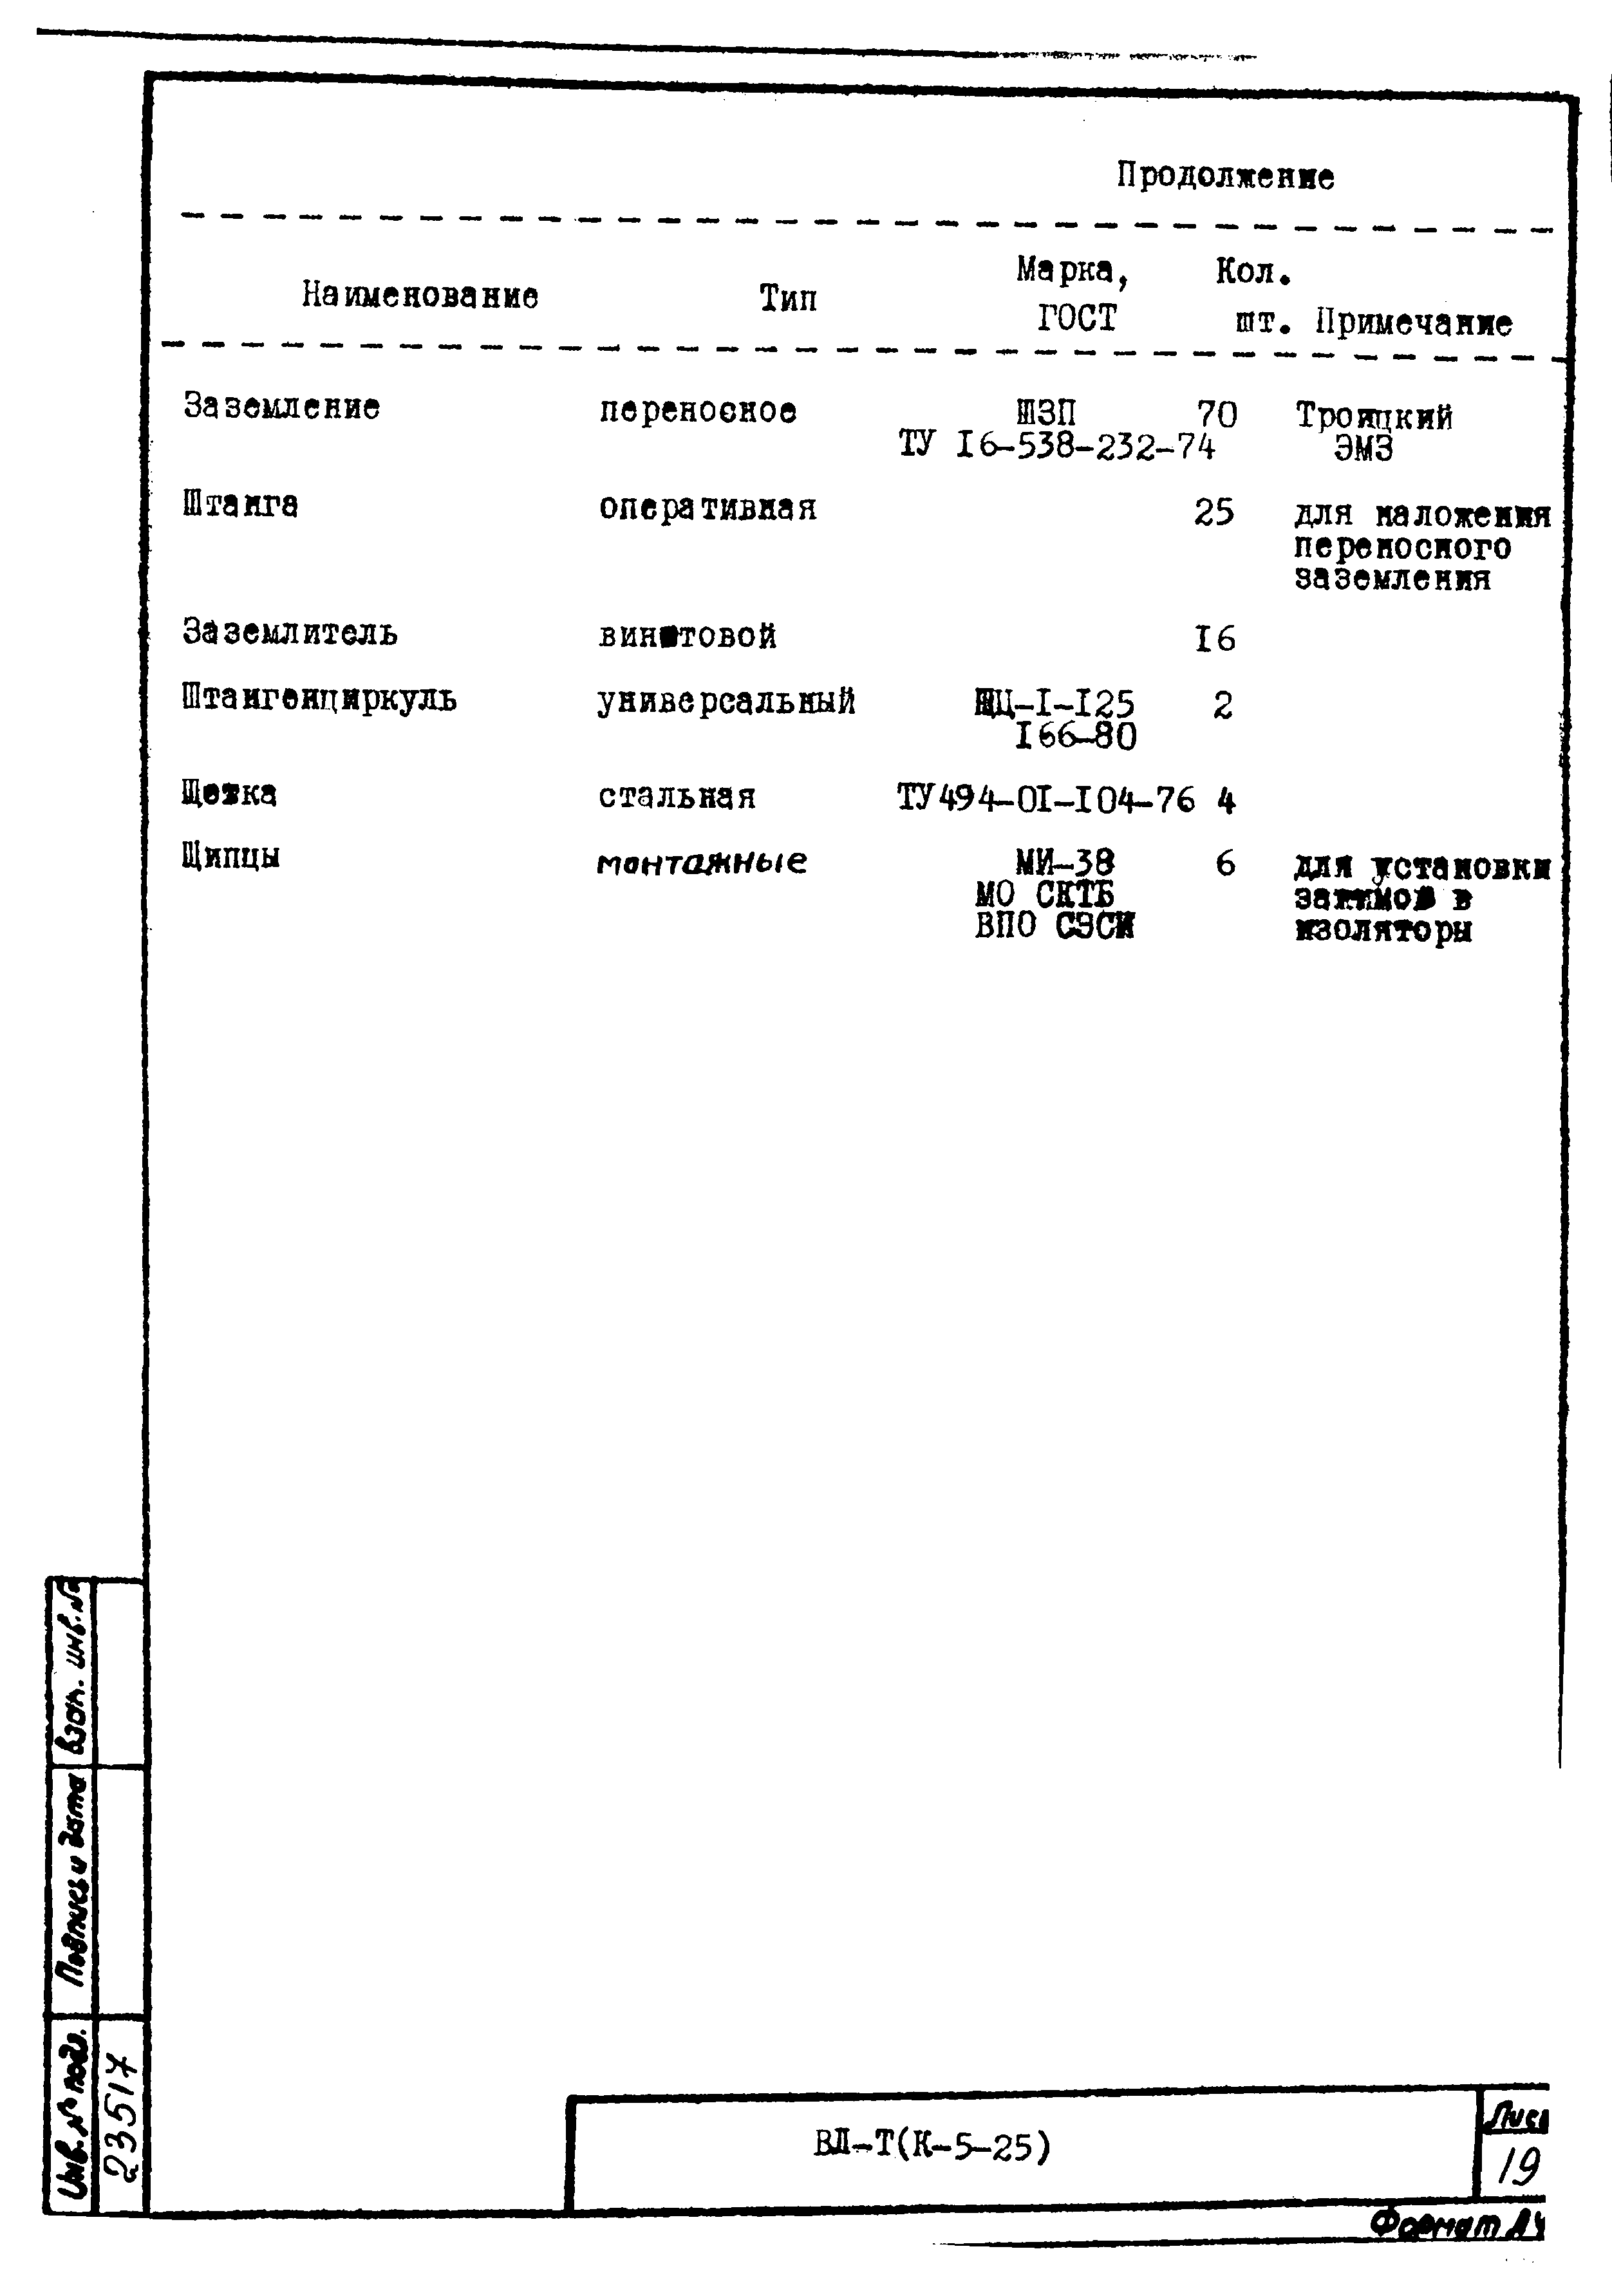 Технологическая карта К-5-25-18